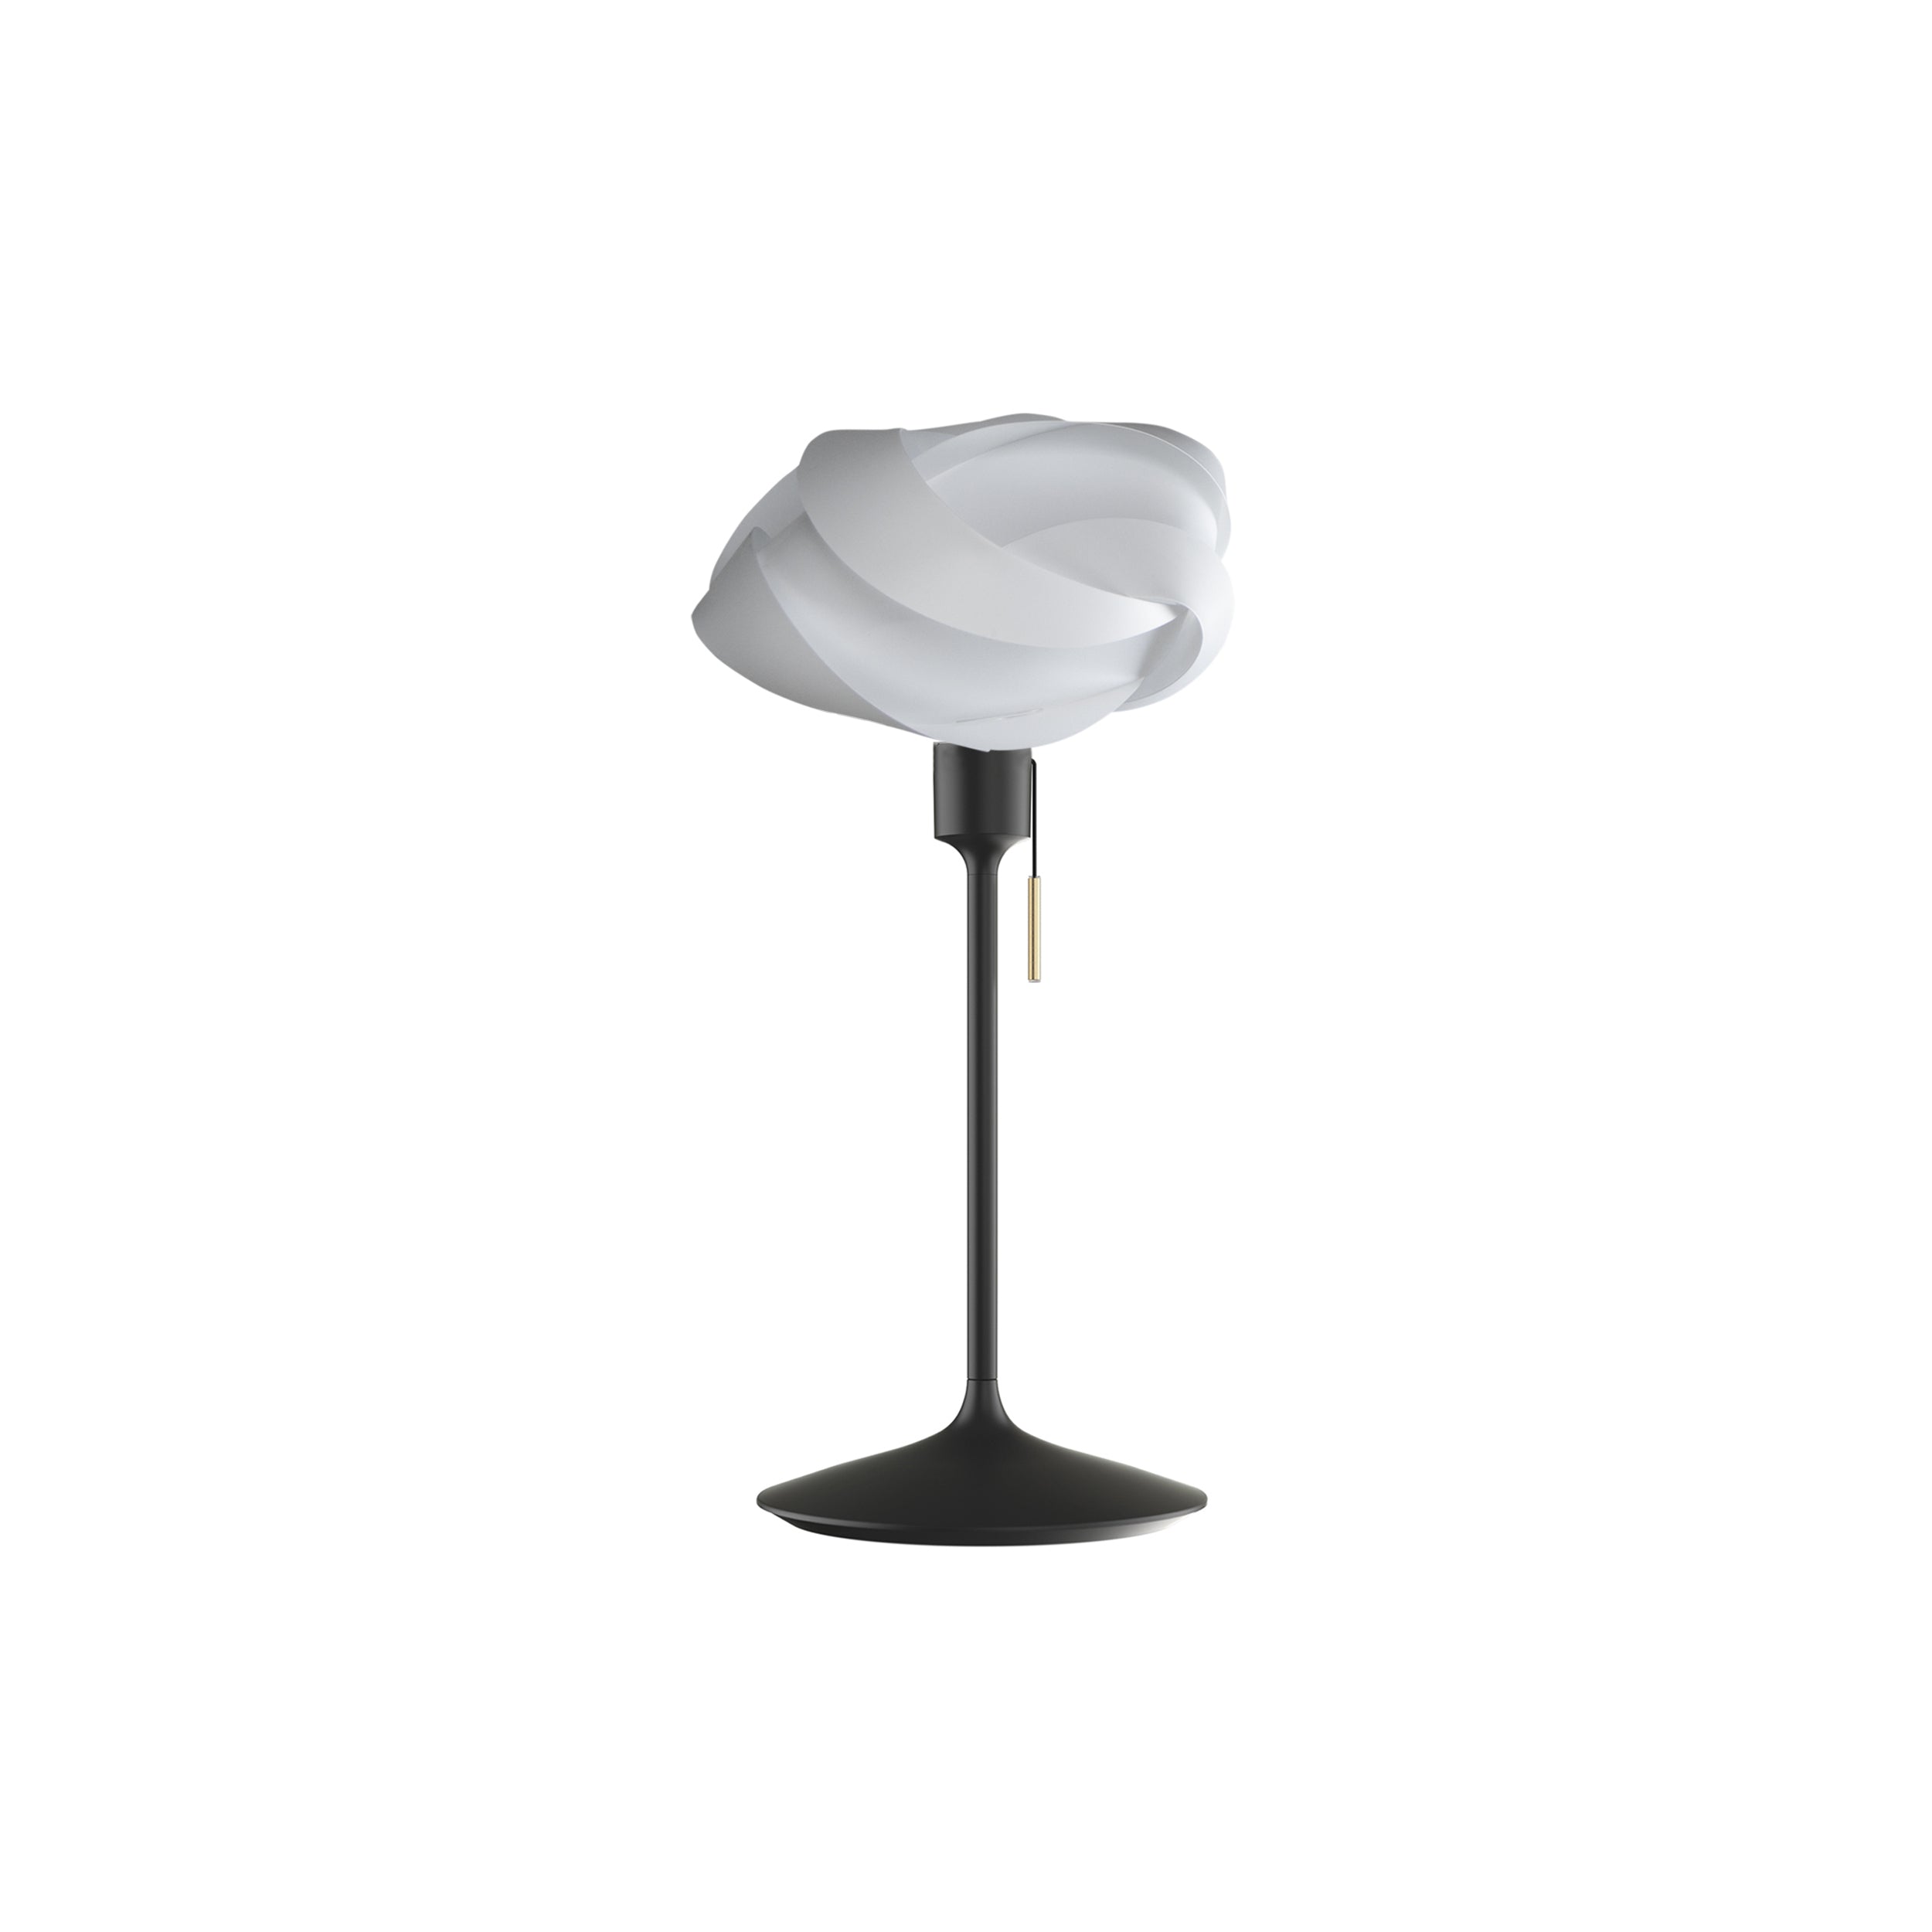 Ribbon Champagne Table Lamp: Mini - 13